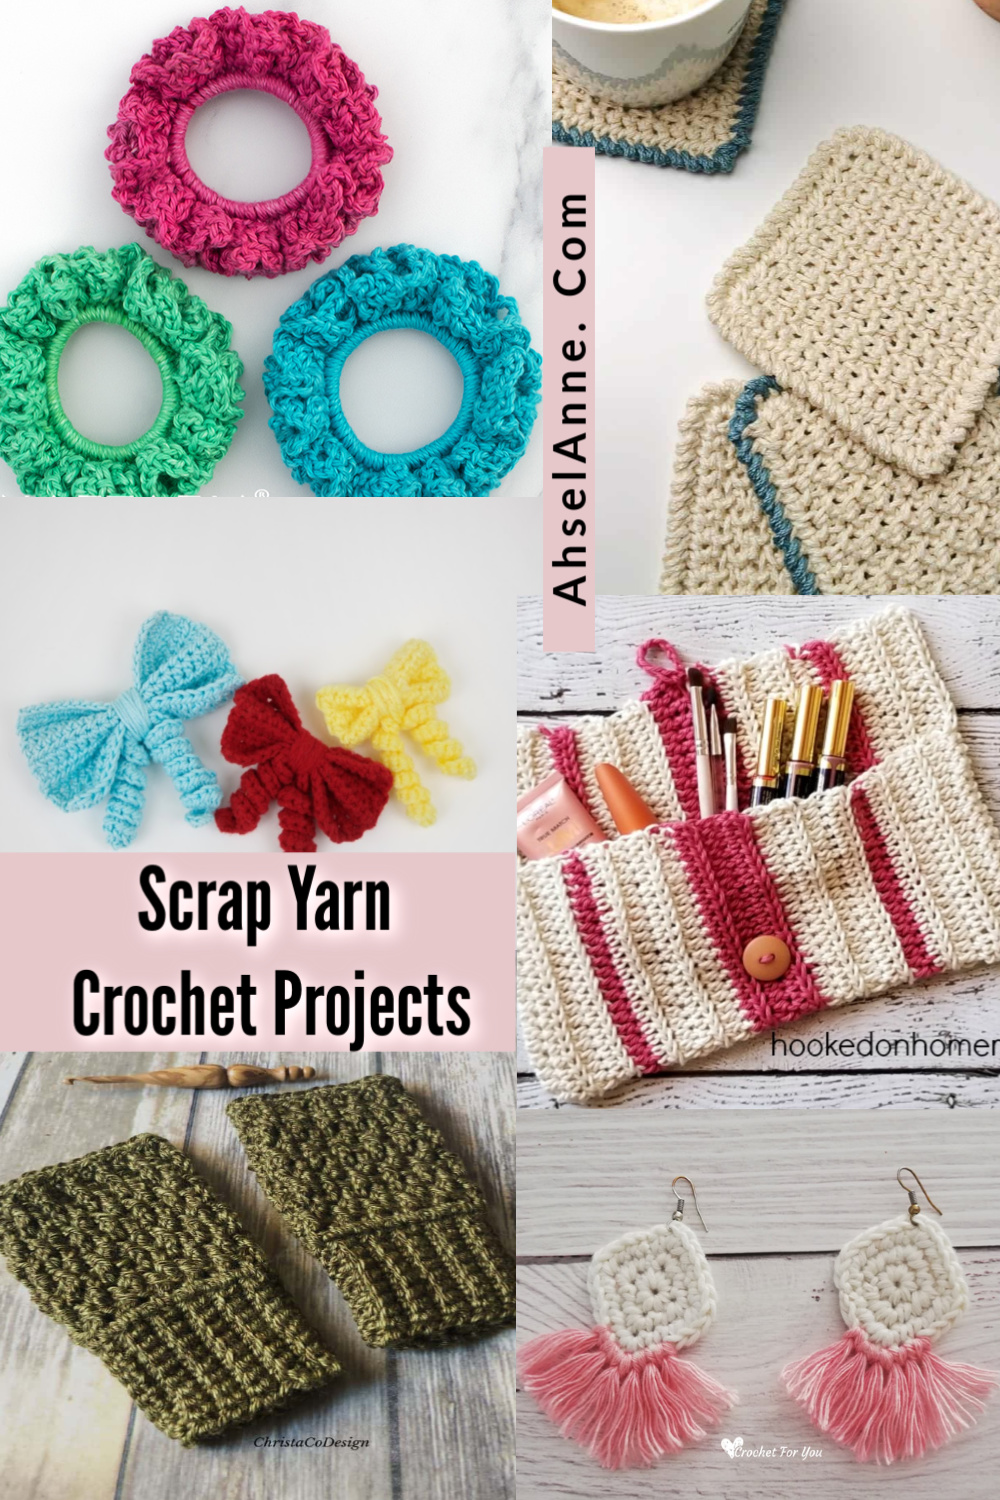 10 Scrap Yarn Crochet Patterns